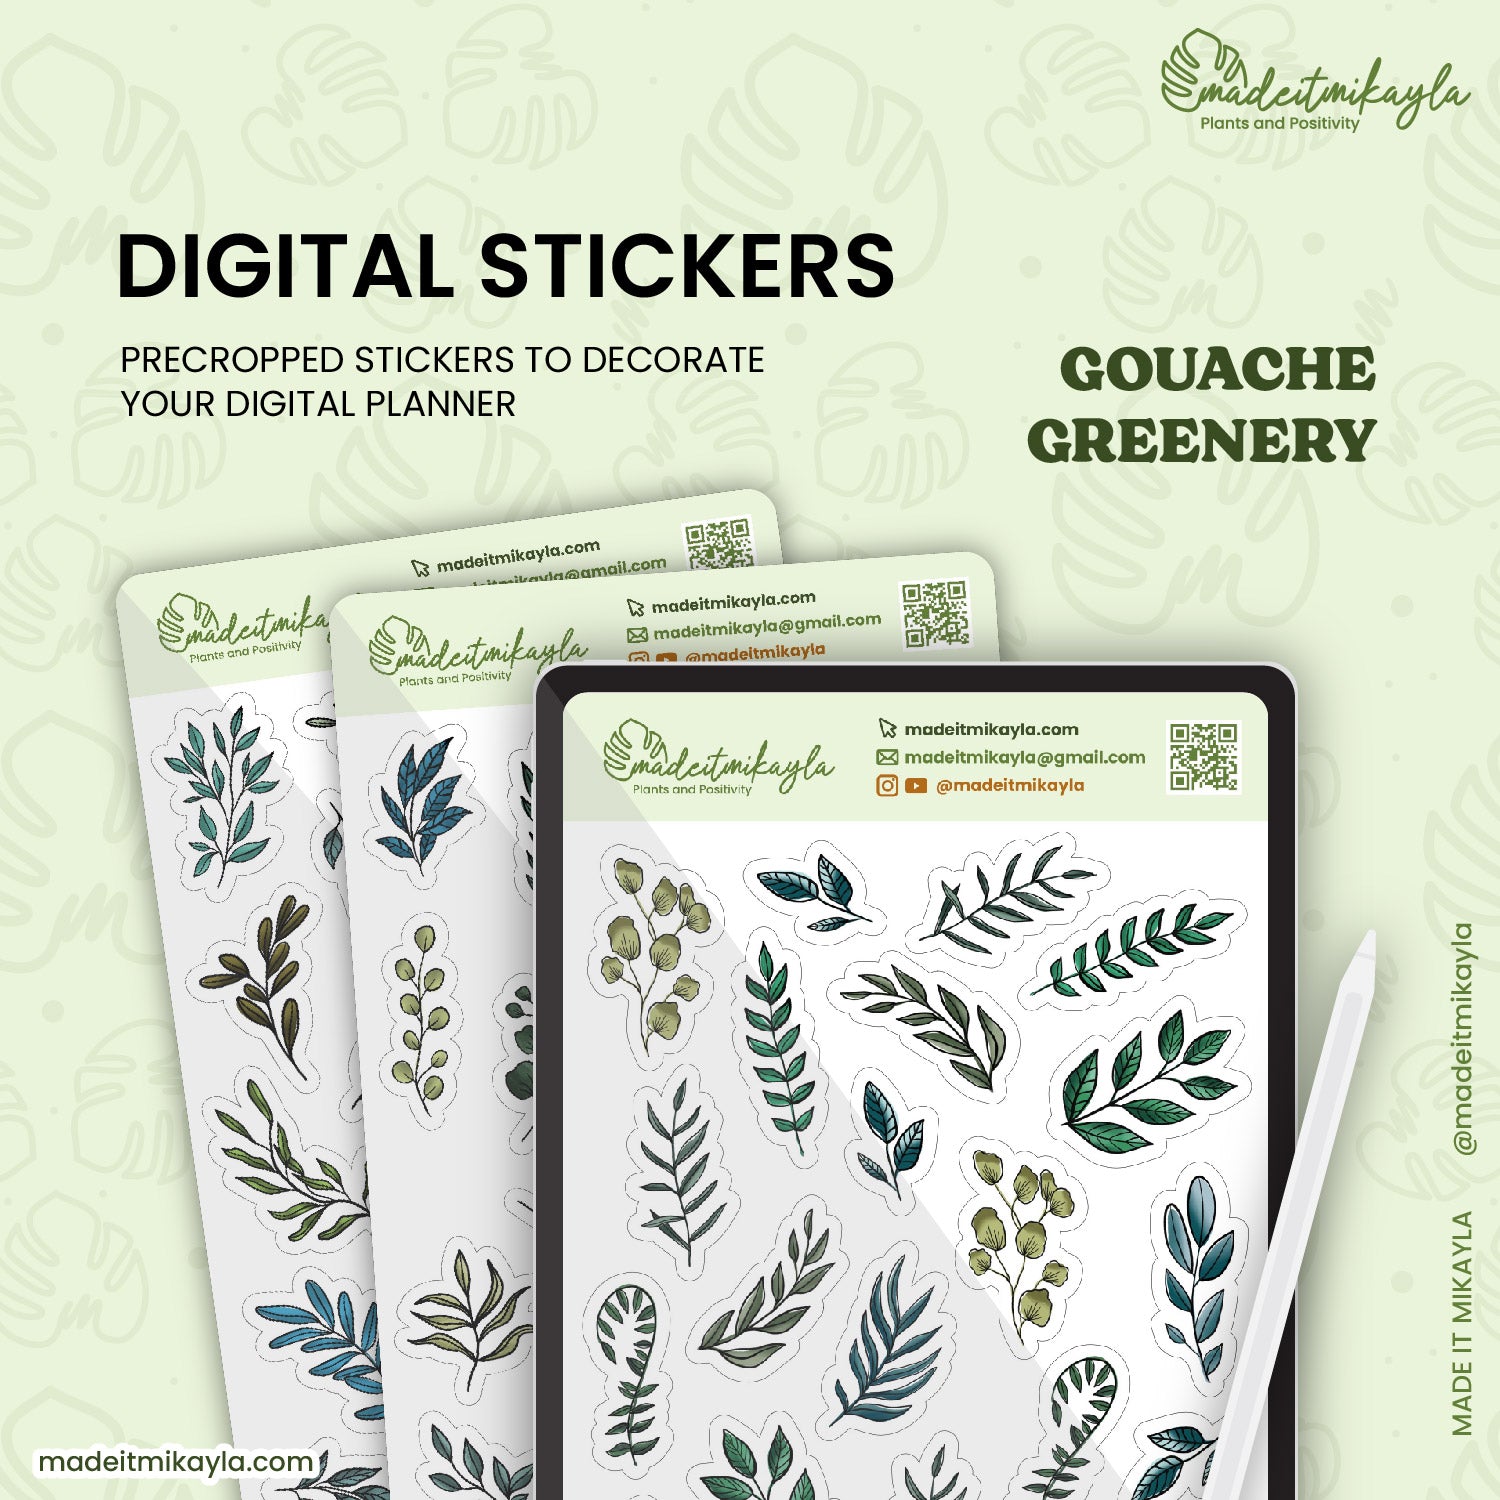 Gouache Greenery Digital Stickers | MadeItMikayla